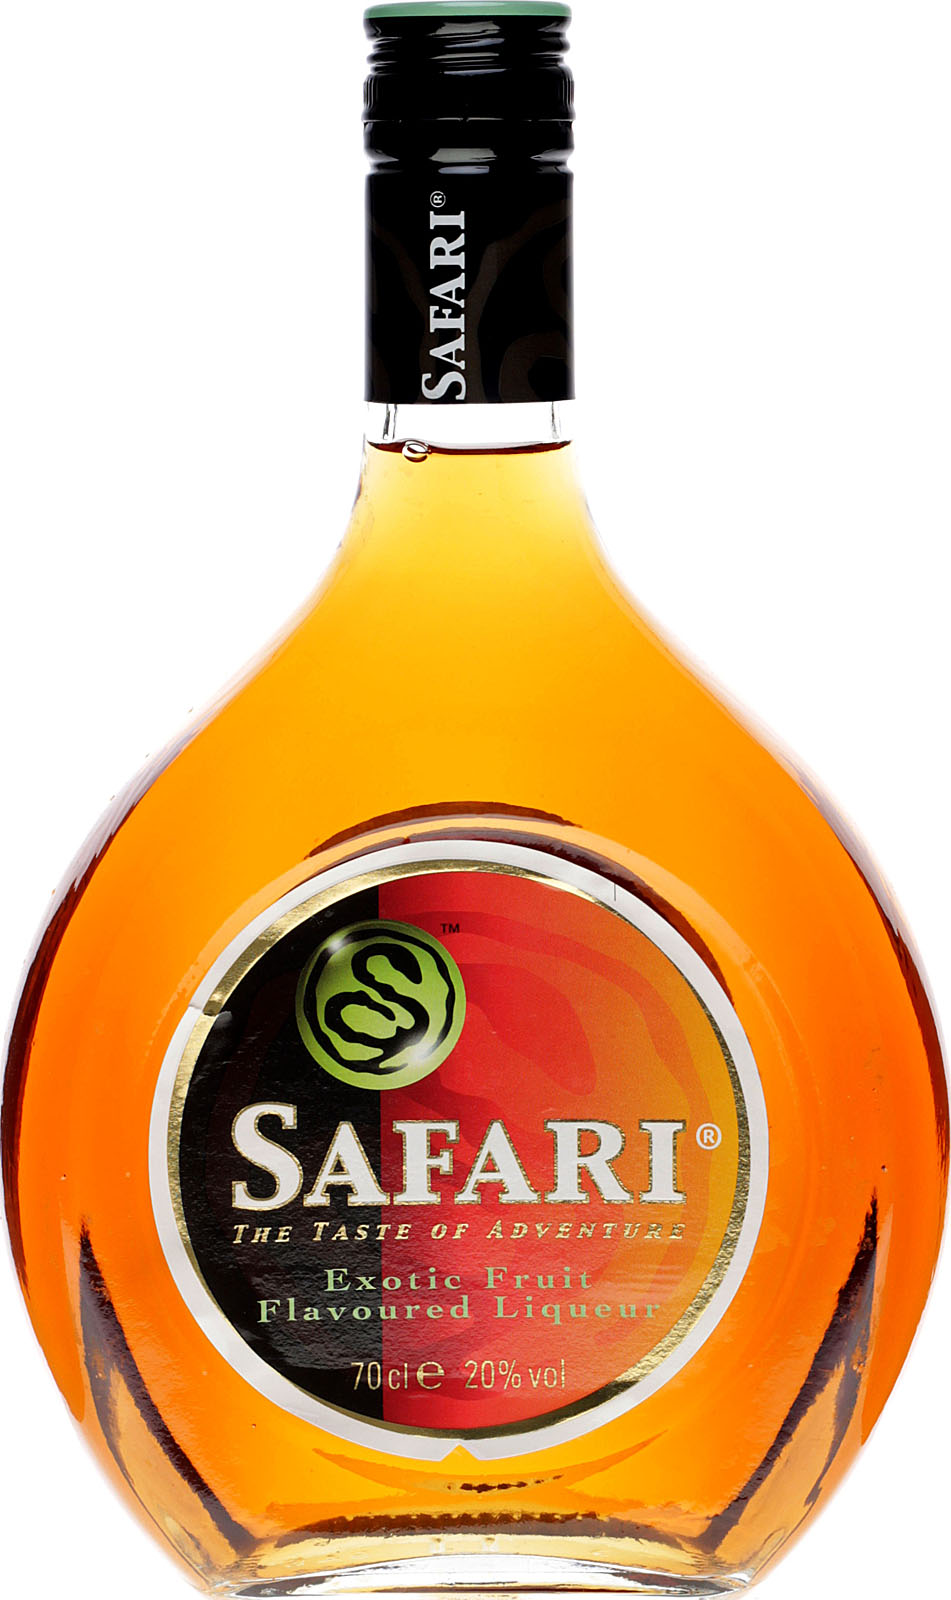 safari liqueur lcbo